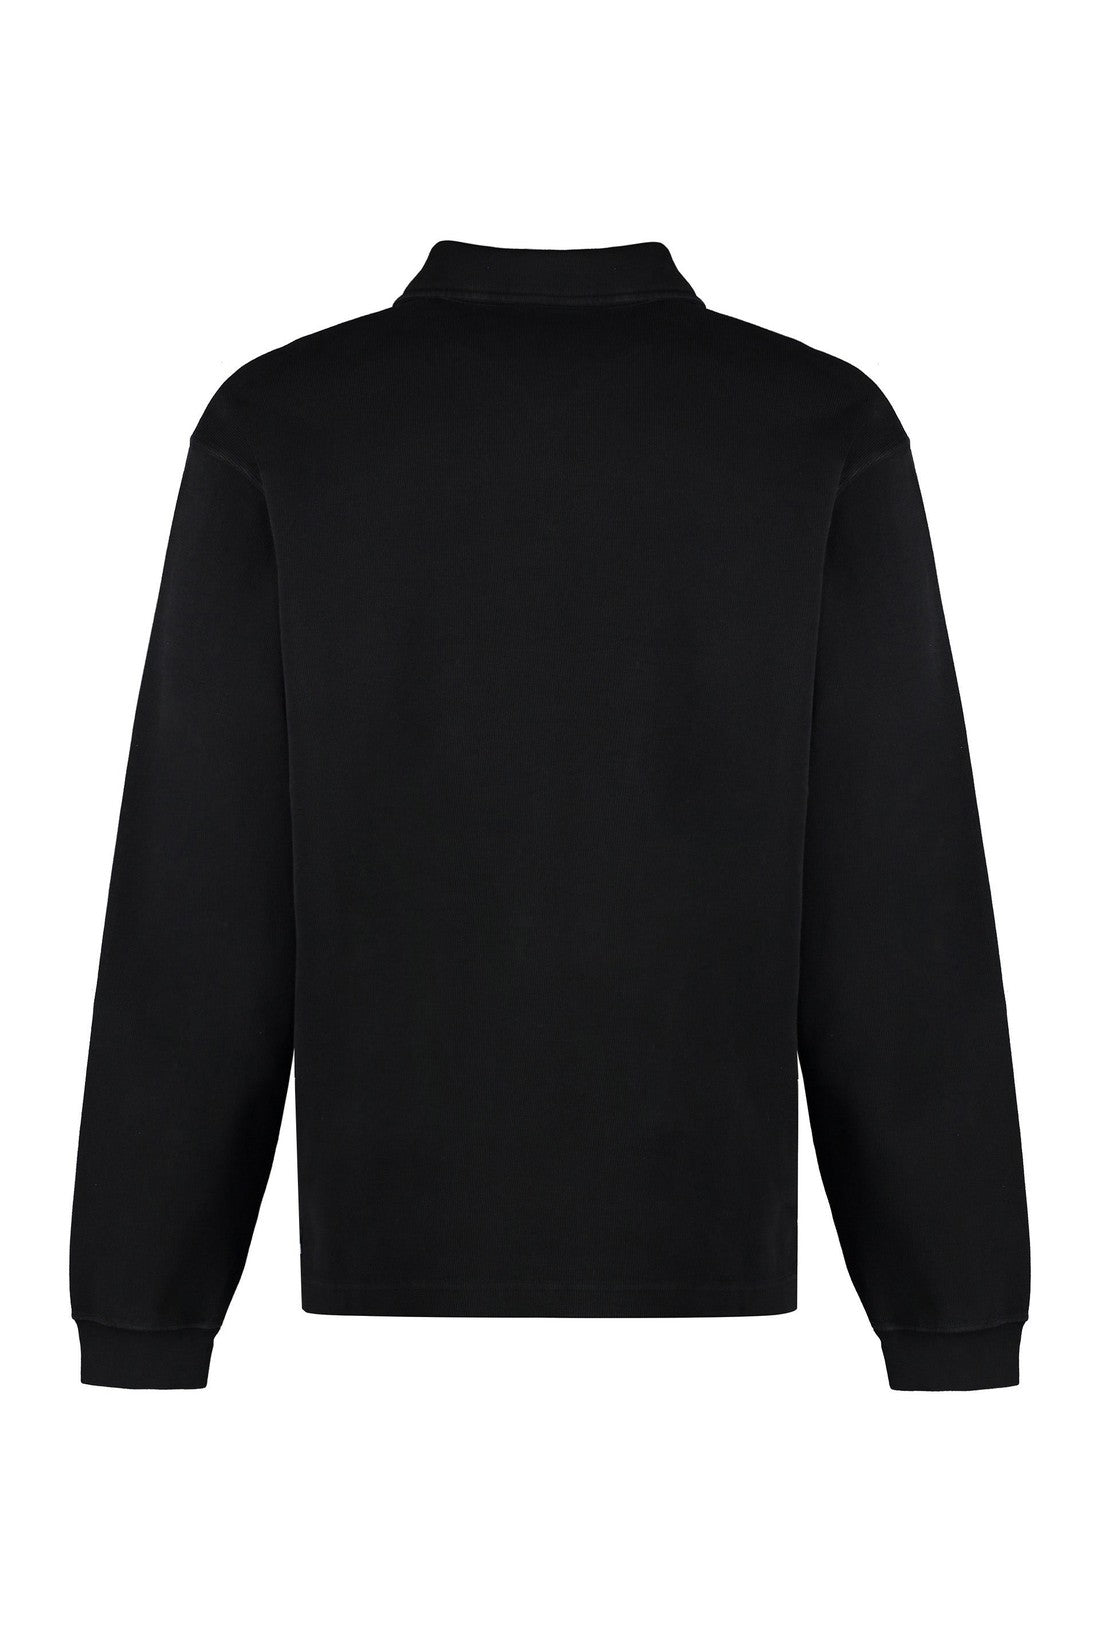 Our Legacy-OUTLET-SALE-Cotton sweatshirt-ARCHIVIST